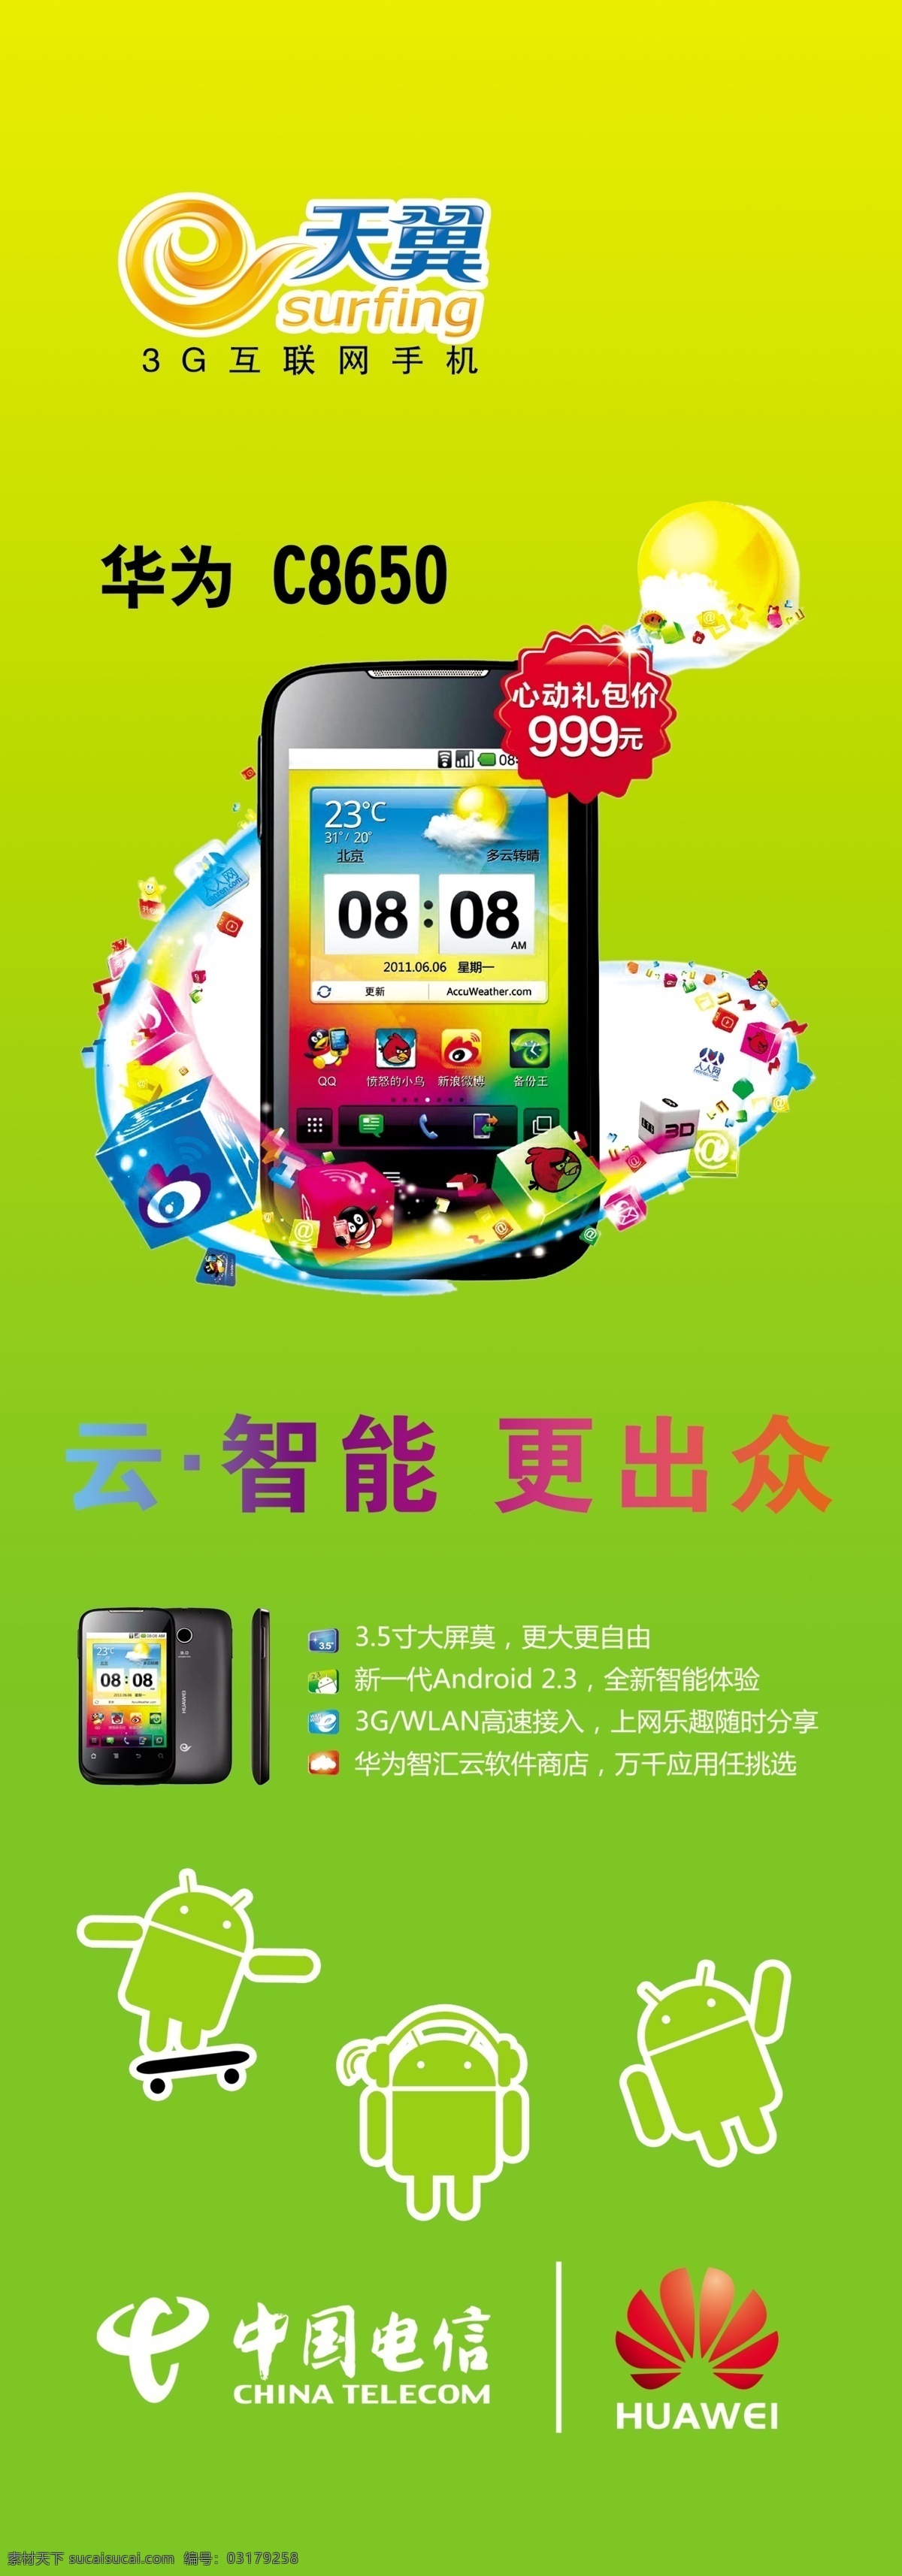 安卓机器人 广告设计模板 华为 华为标志 华为手机 手机宣传 天翼 源文件 c8650 中国电信标志 展板 展板模板 矢量图 现代科技